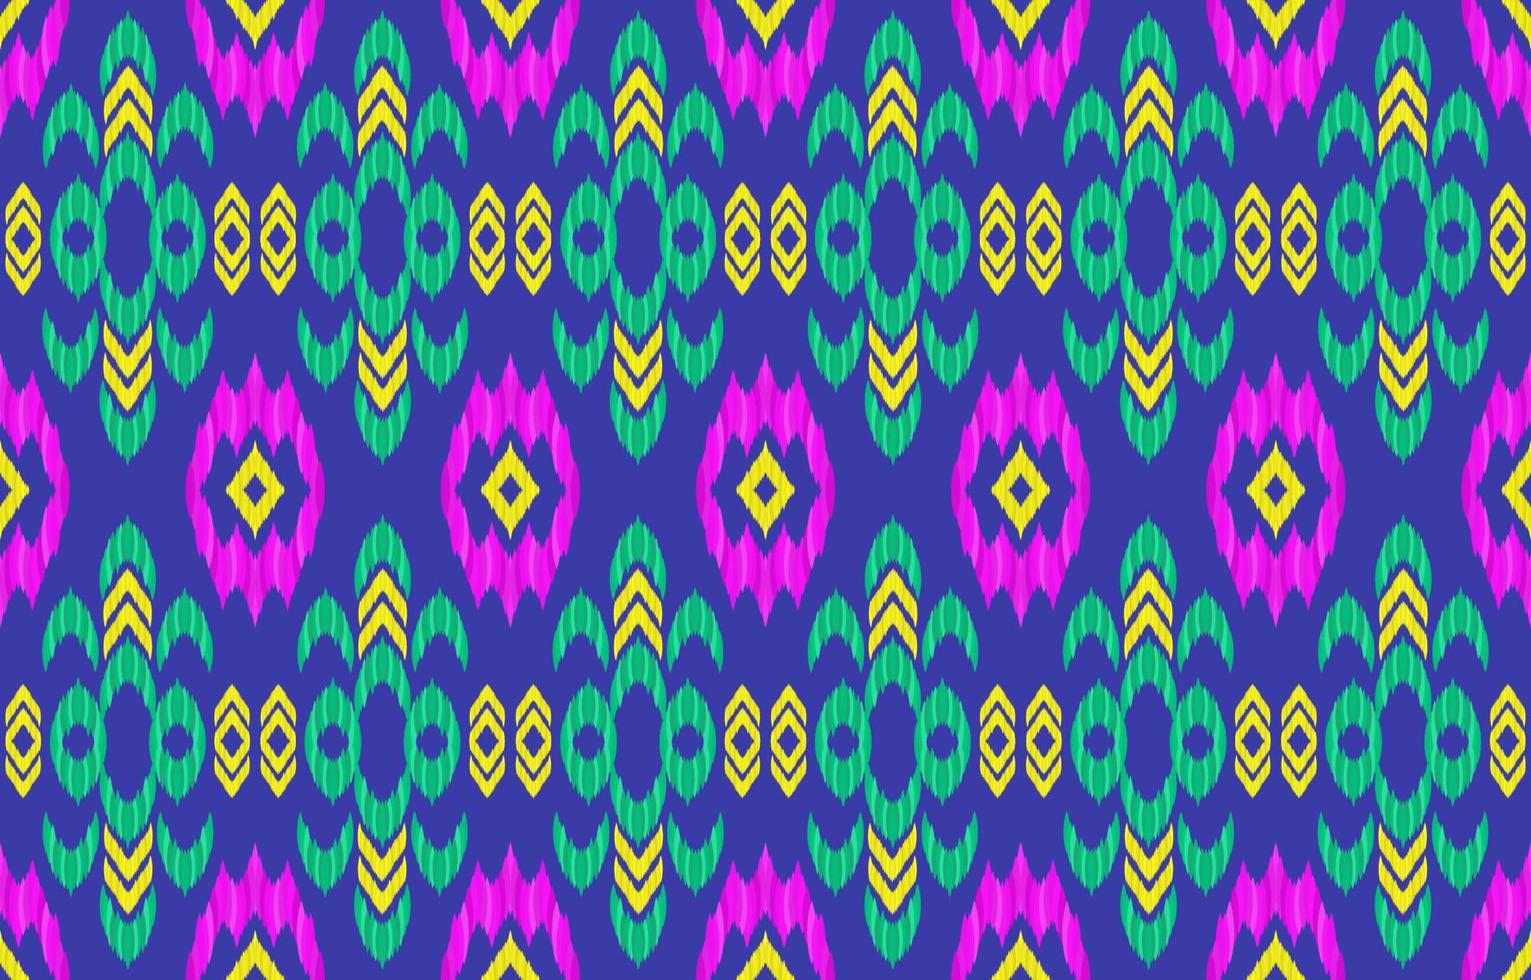 padrão de tecido étnico ikat. geométrico tribal vintage retrô indiano navajo estilo asteca. design para decorar pano de fundo, textura infinita, tecido, roupas, têxteis, bordados, tapetes. ilustração vetorial. vetor